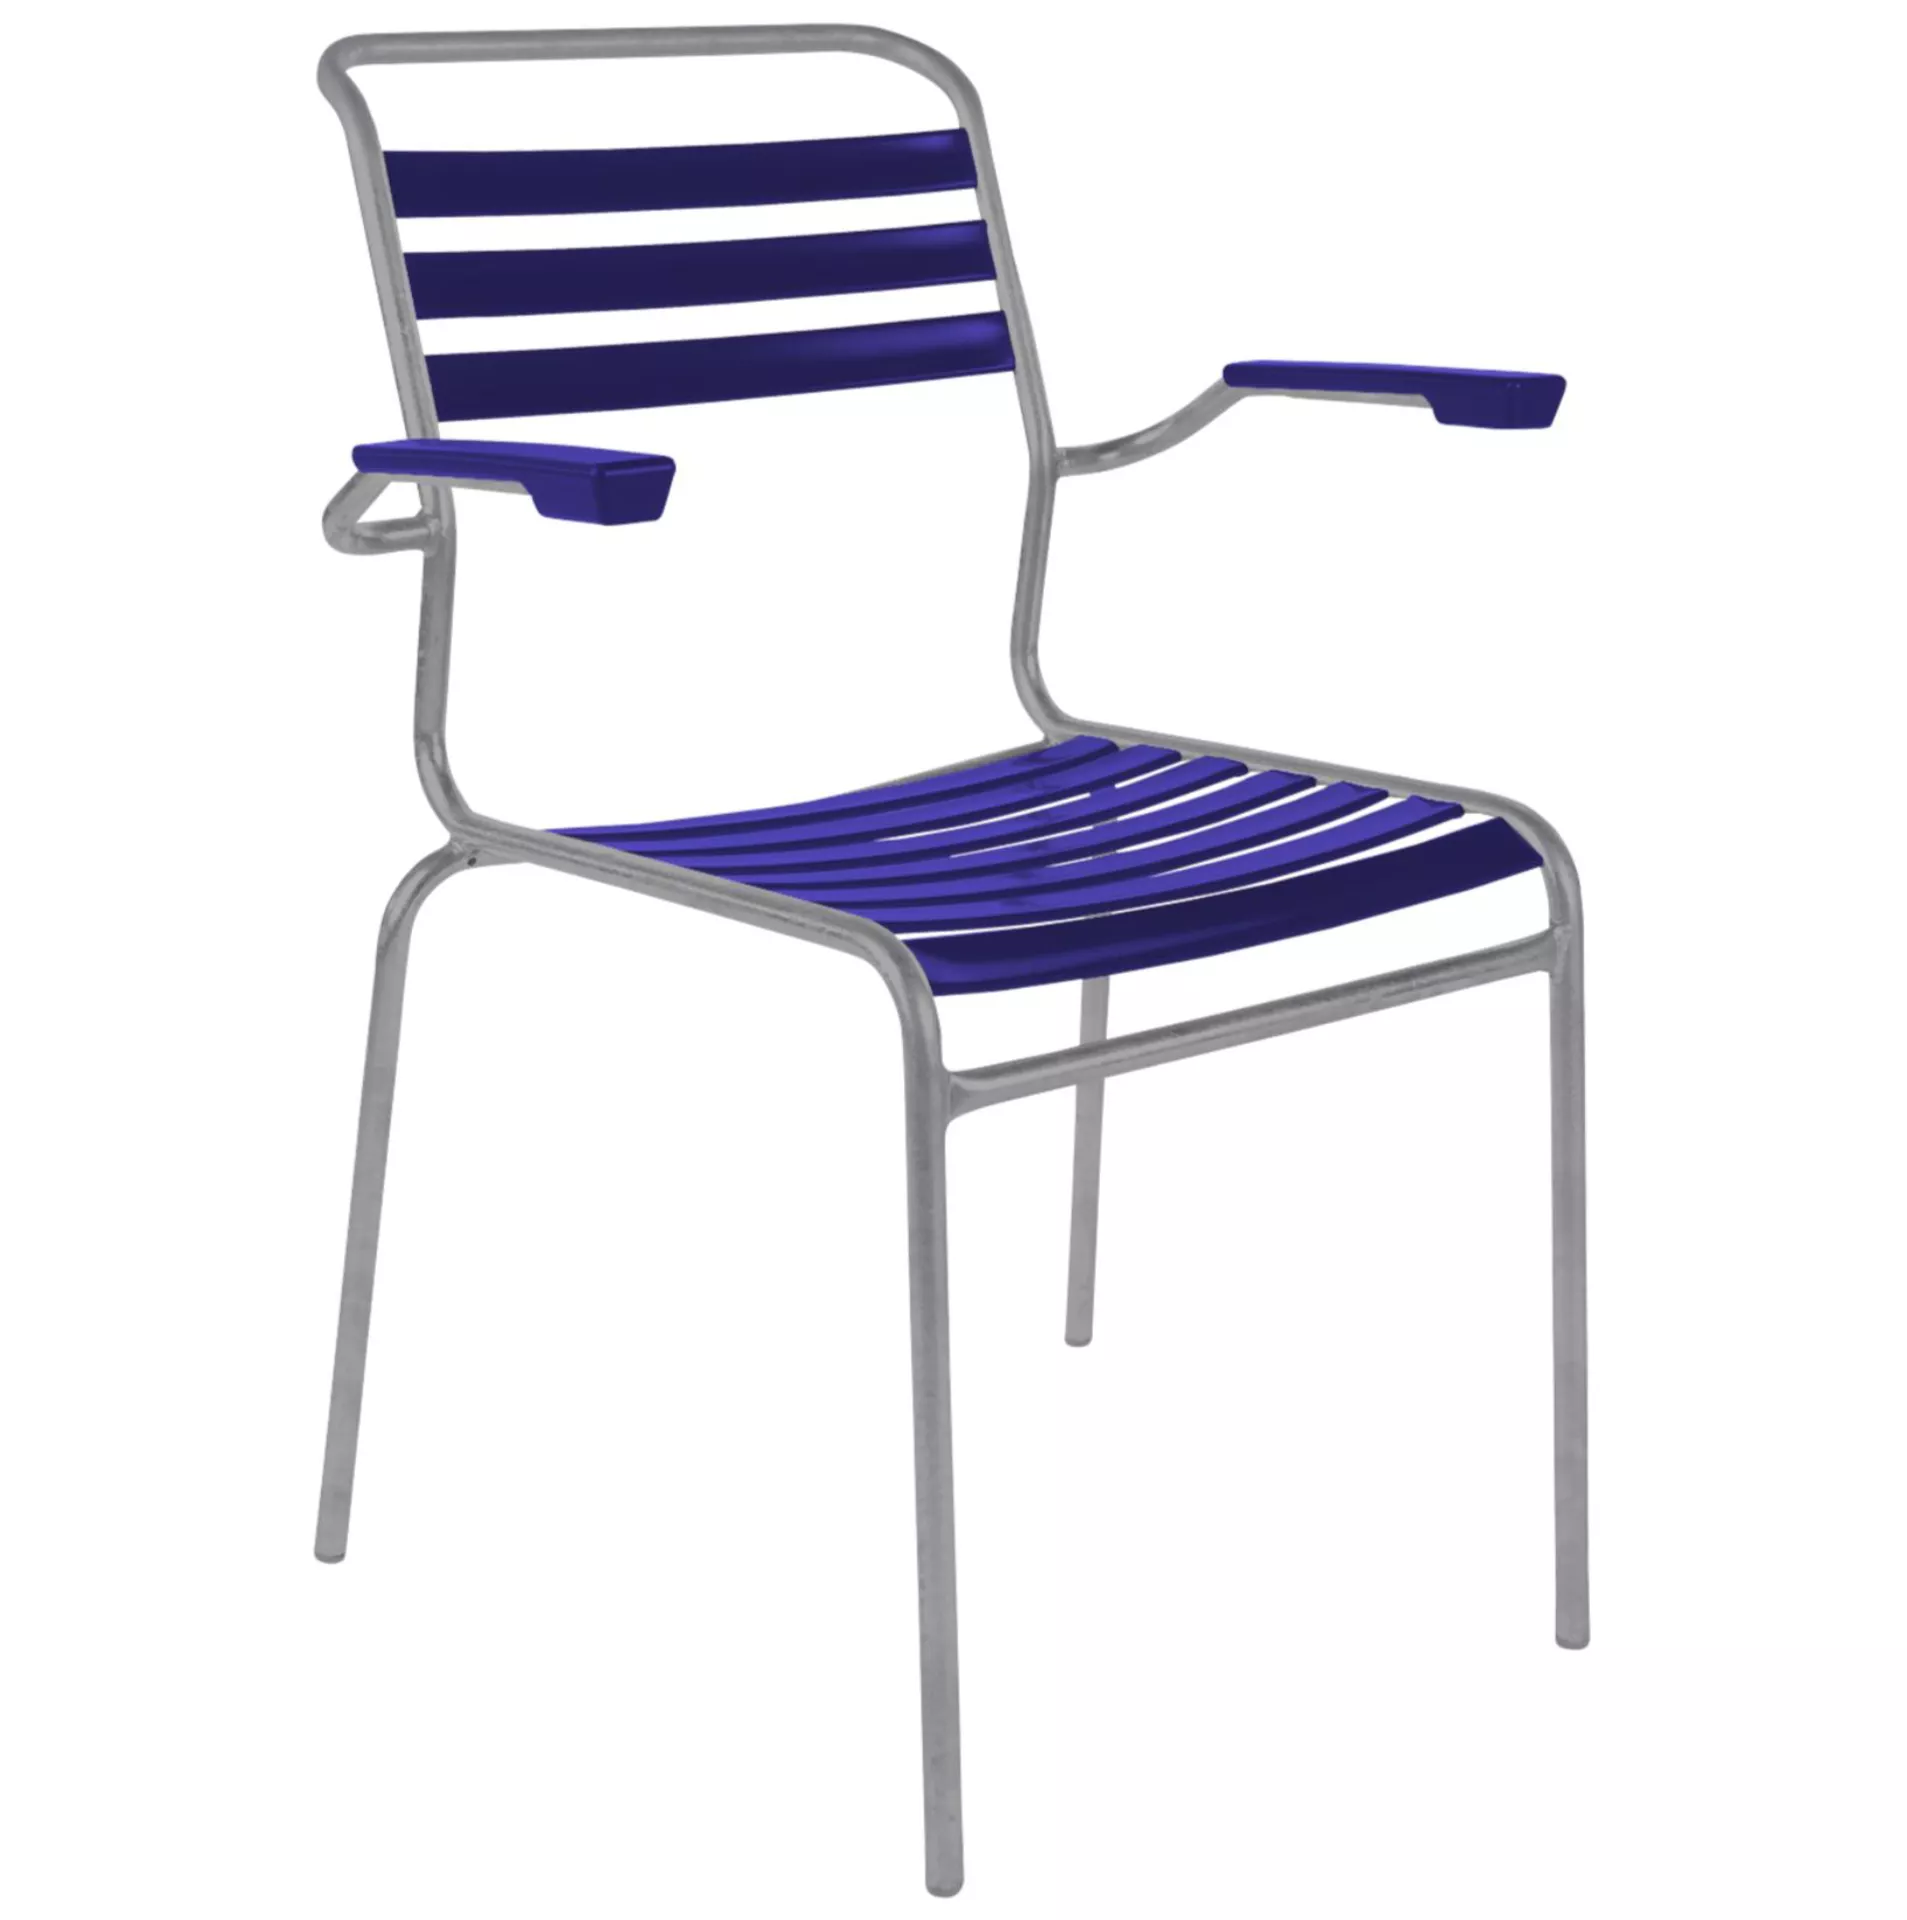 Lättli-Stuhl Säntis mit Armlehnen Schaffner / Farbe: Kobaltblau